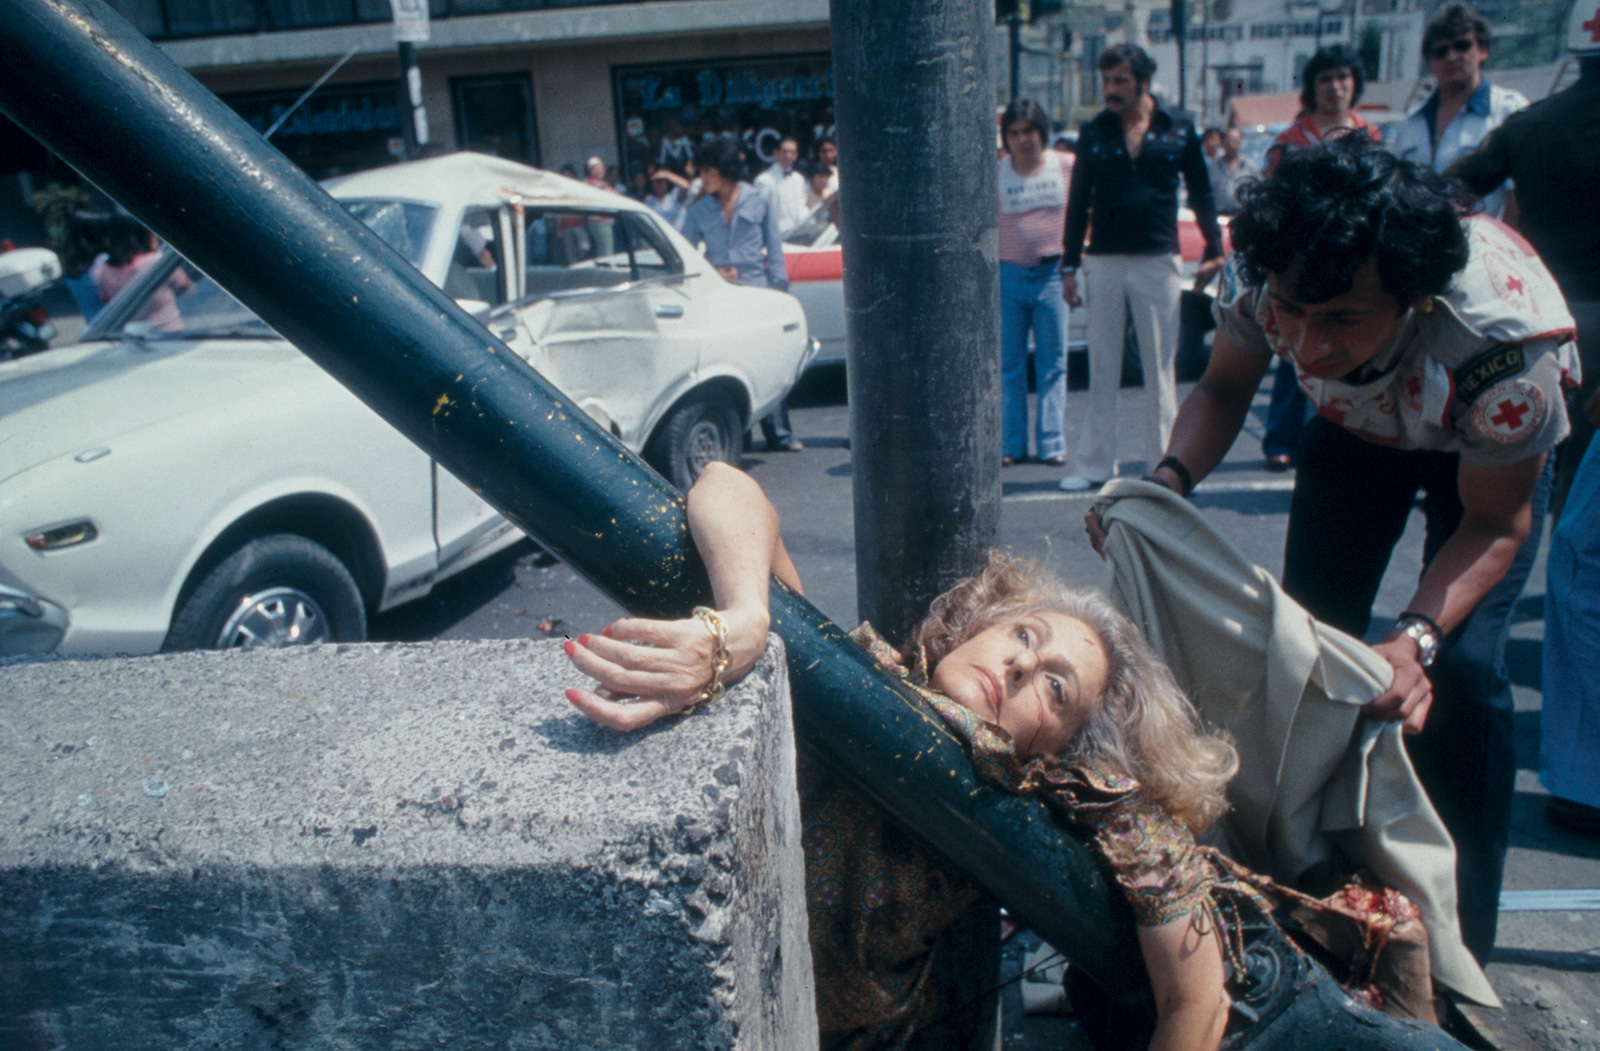 Enrique Metinides, Adela Legarreta Rivas es arrollada por un automóvil Datsun color blanco. Avenida Chapultepec, Ciudad de México, 1979. Cortesía Archivo Enrique Metinides